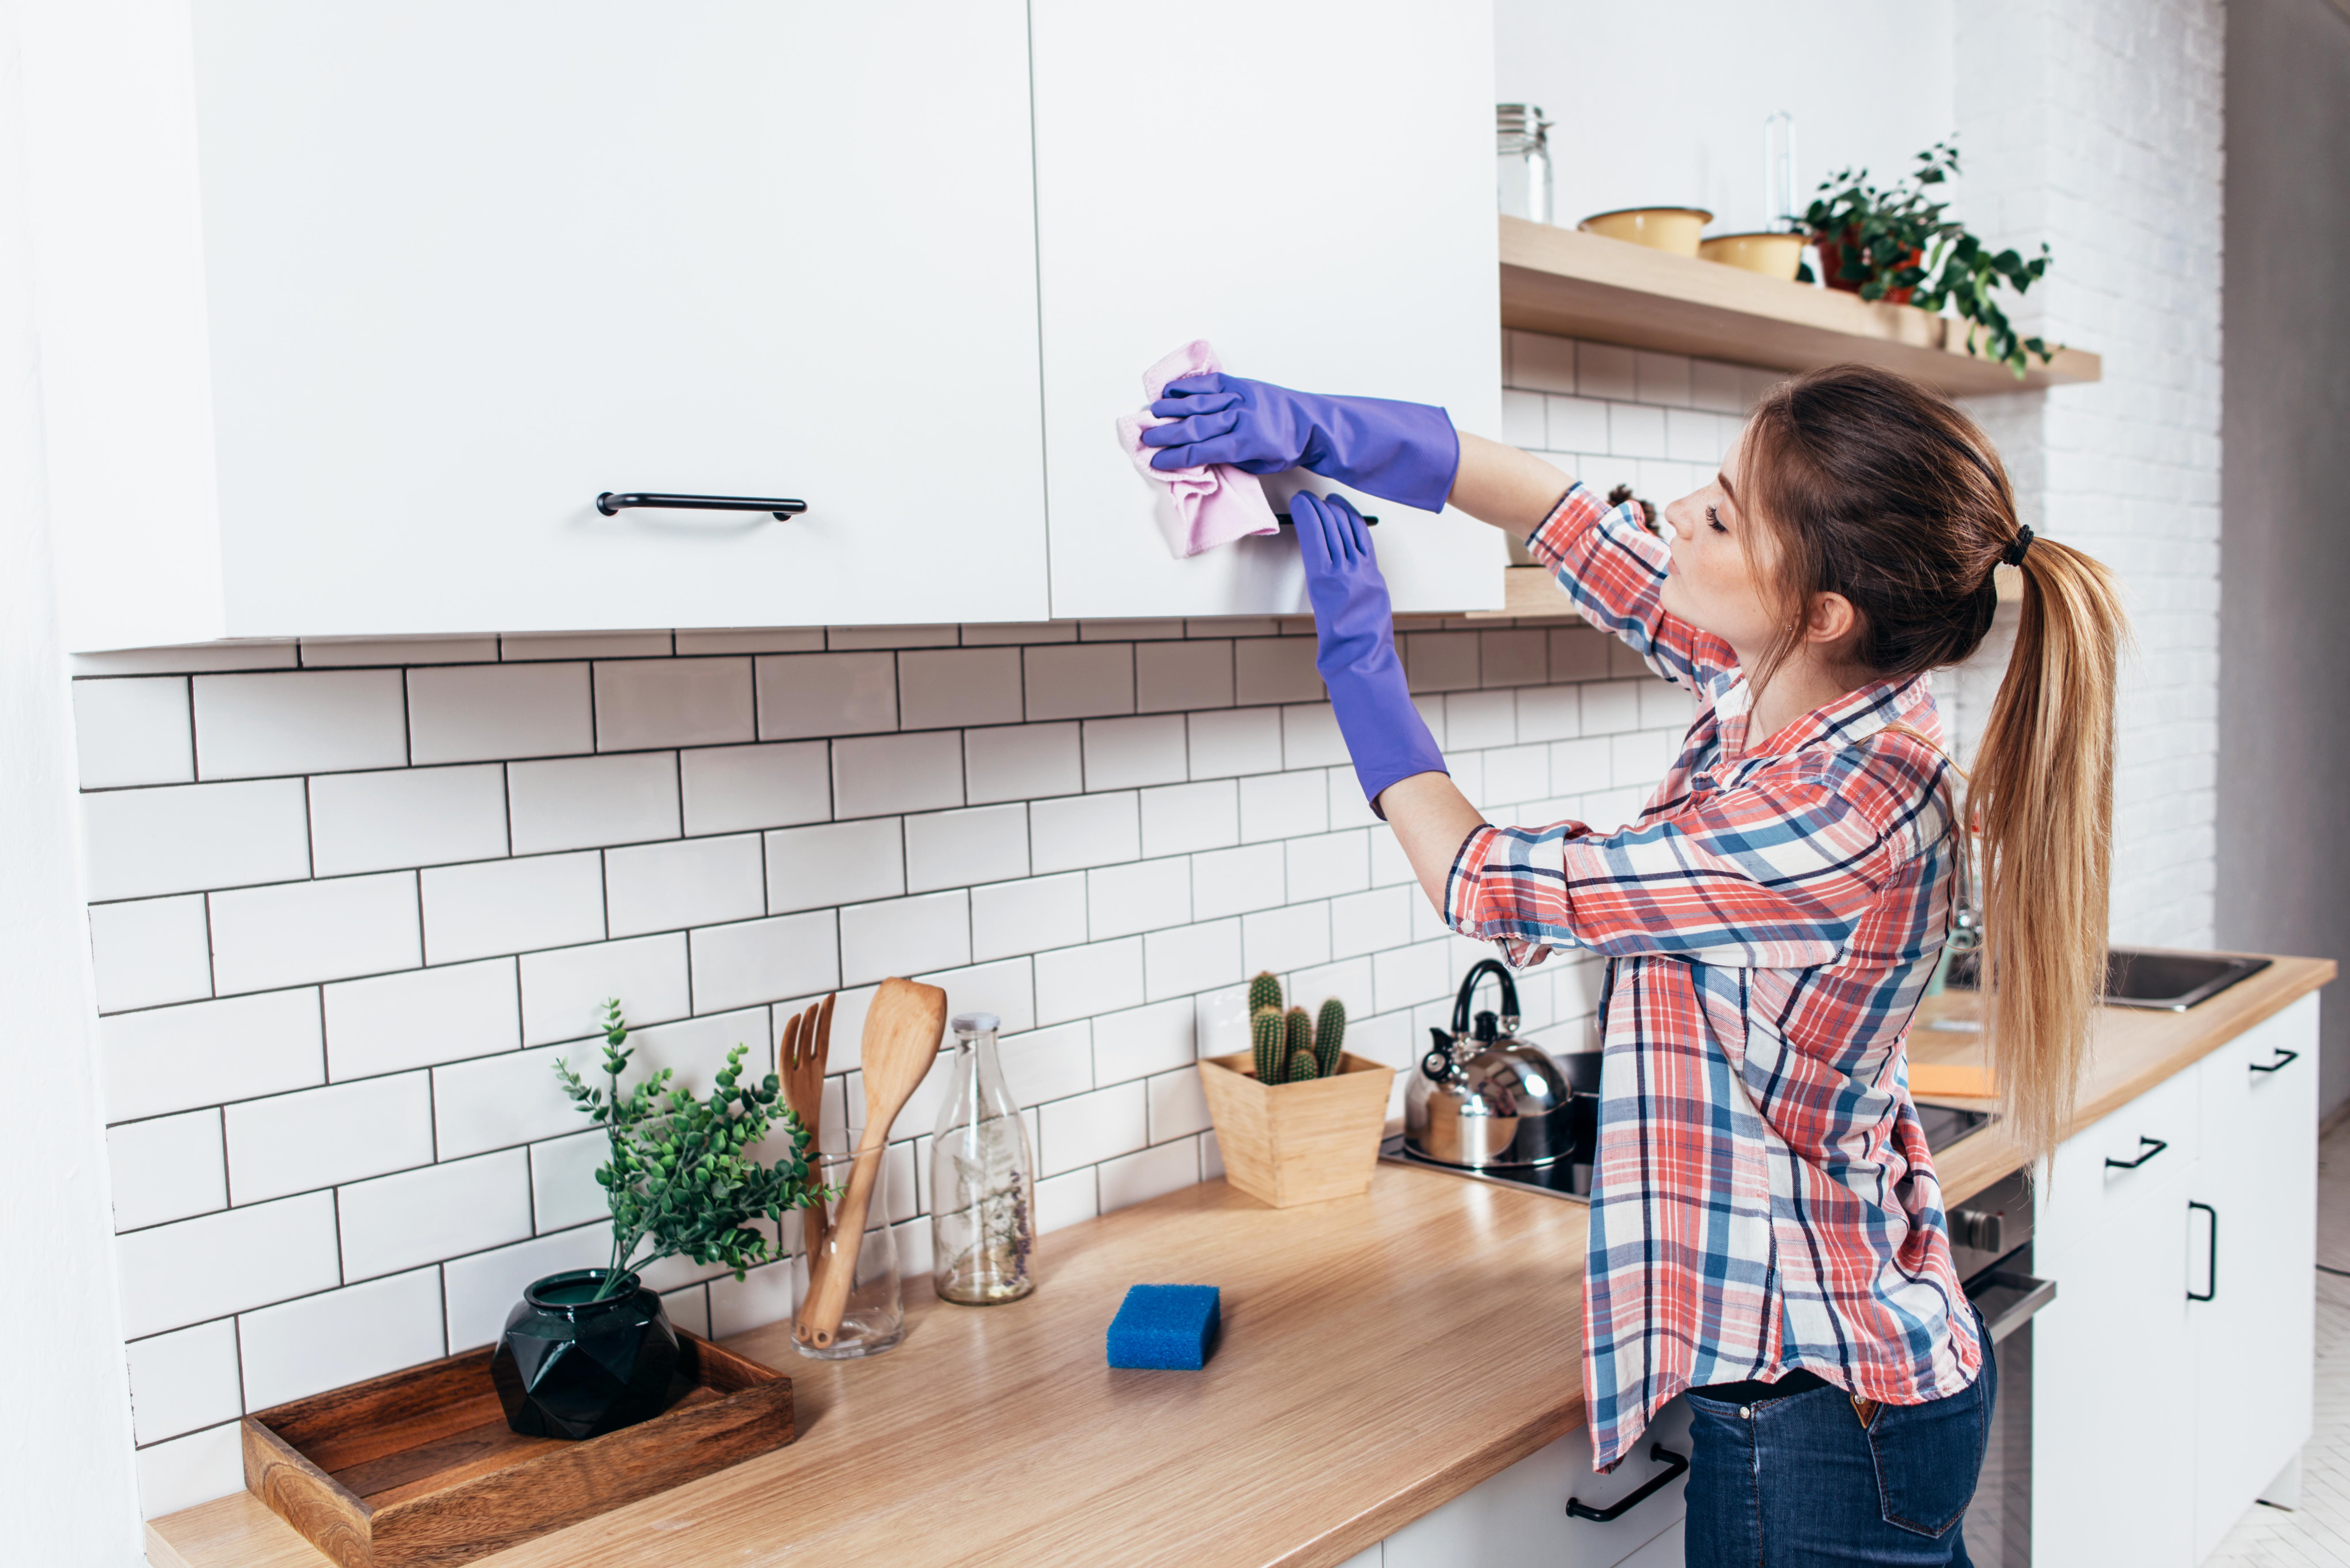 Frau putzt Küchenschrank mit einem feuchten Lappen.